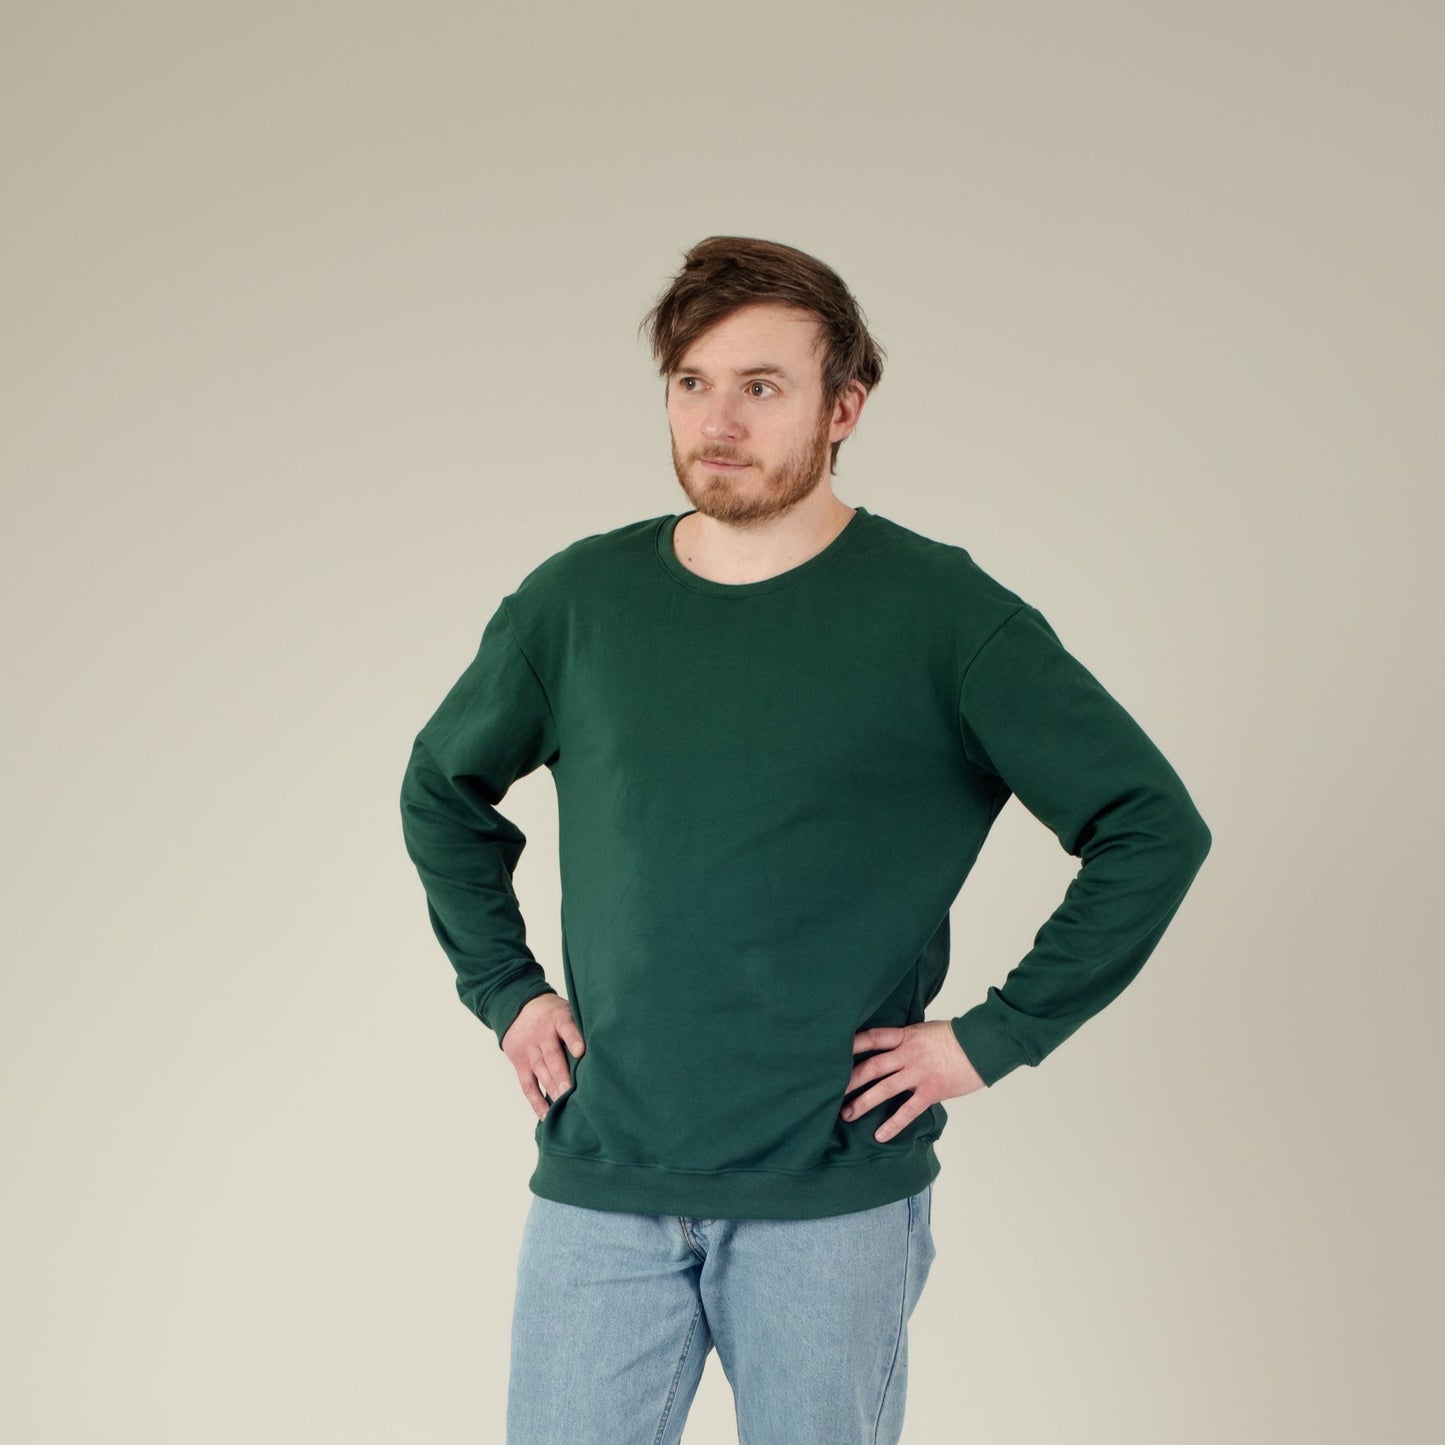 Herren-Sweater Damen-Sweater Unisex-Sweater Grün, Vorderansicht, Urheber: Mini & Eve